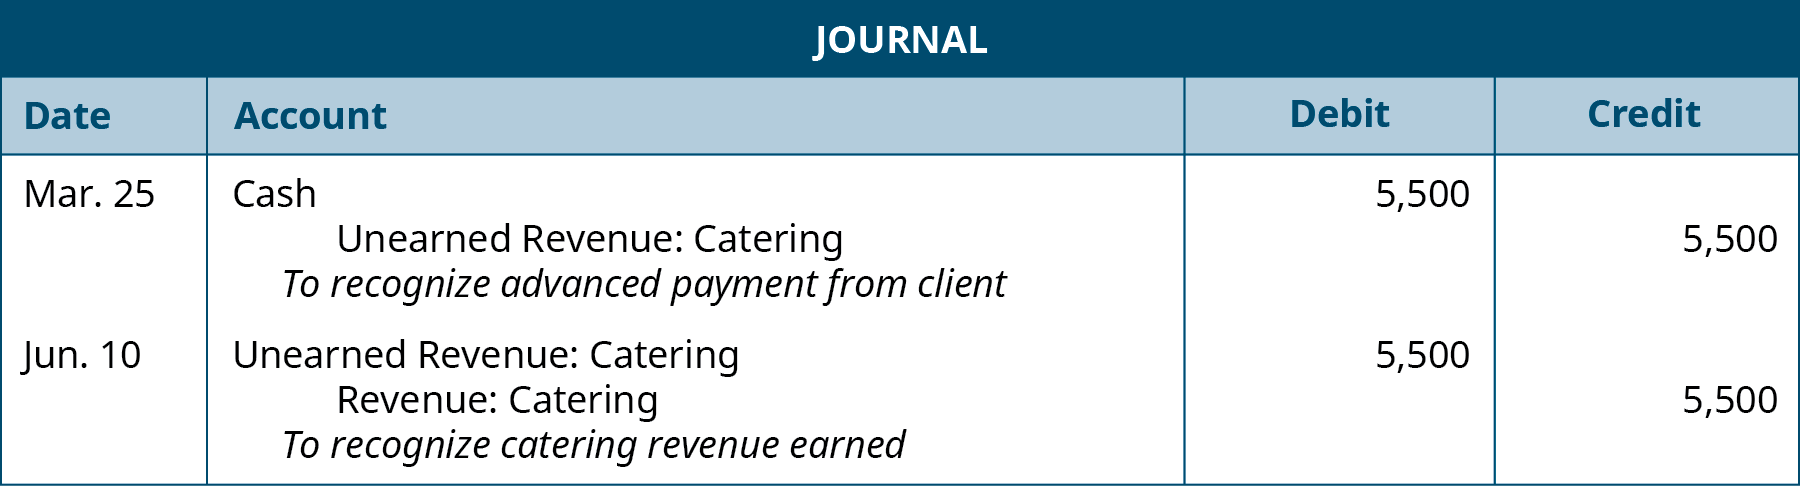 第一份日记账分录是在3月25日记入的，显示了5,500美元的借记现金，5,500美元记入未赚取的餐饮收入，并附有 “确认客户的预付款” 的注释。 第二个日记账分录是在 6 月 10 日生成的，其中显示了 5,500 美元的借记到未赚取的餐饮收入和 5,500 美元的餐饮收入贷项，并附有 “确认已赚取的餐饮收入” 的附注。